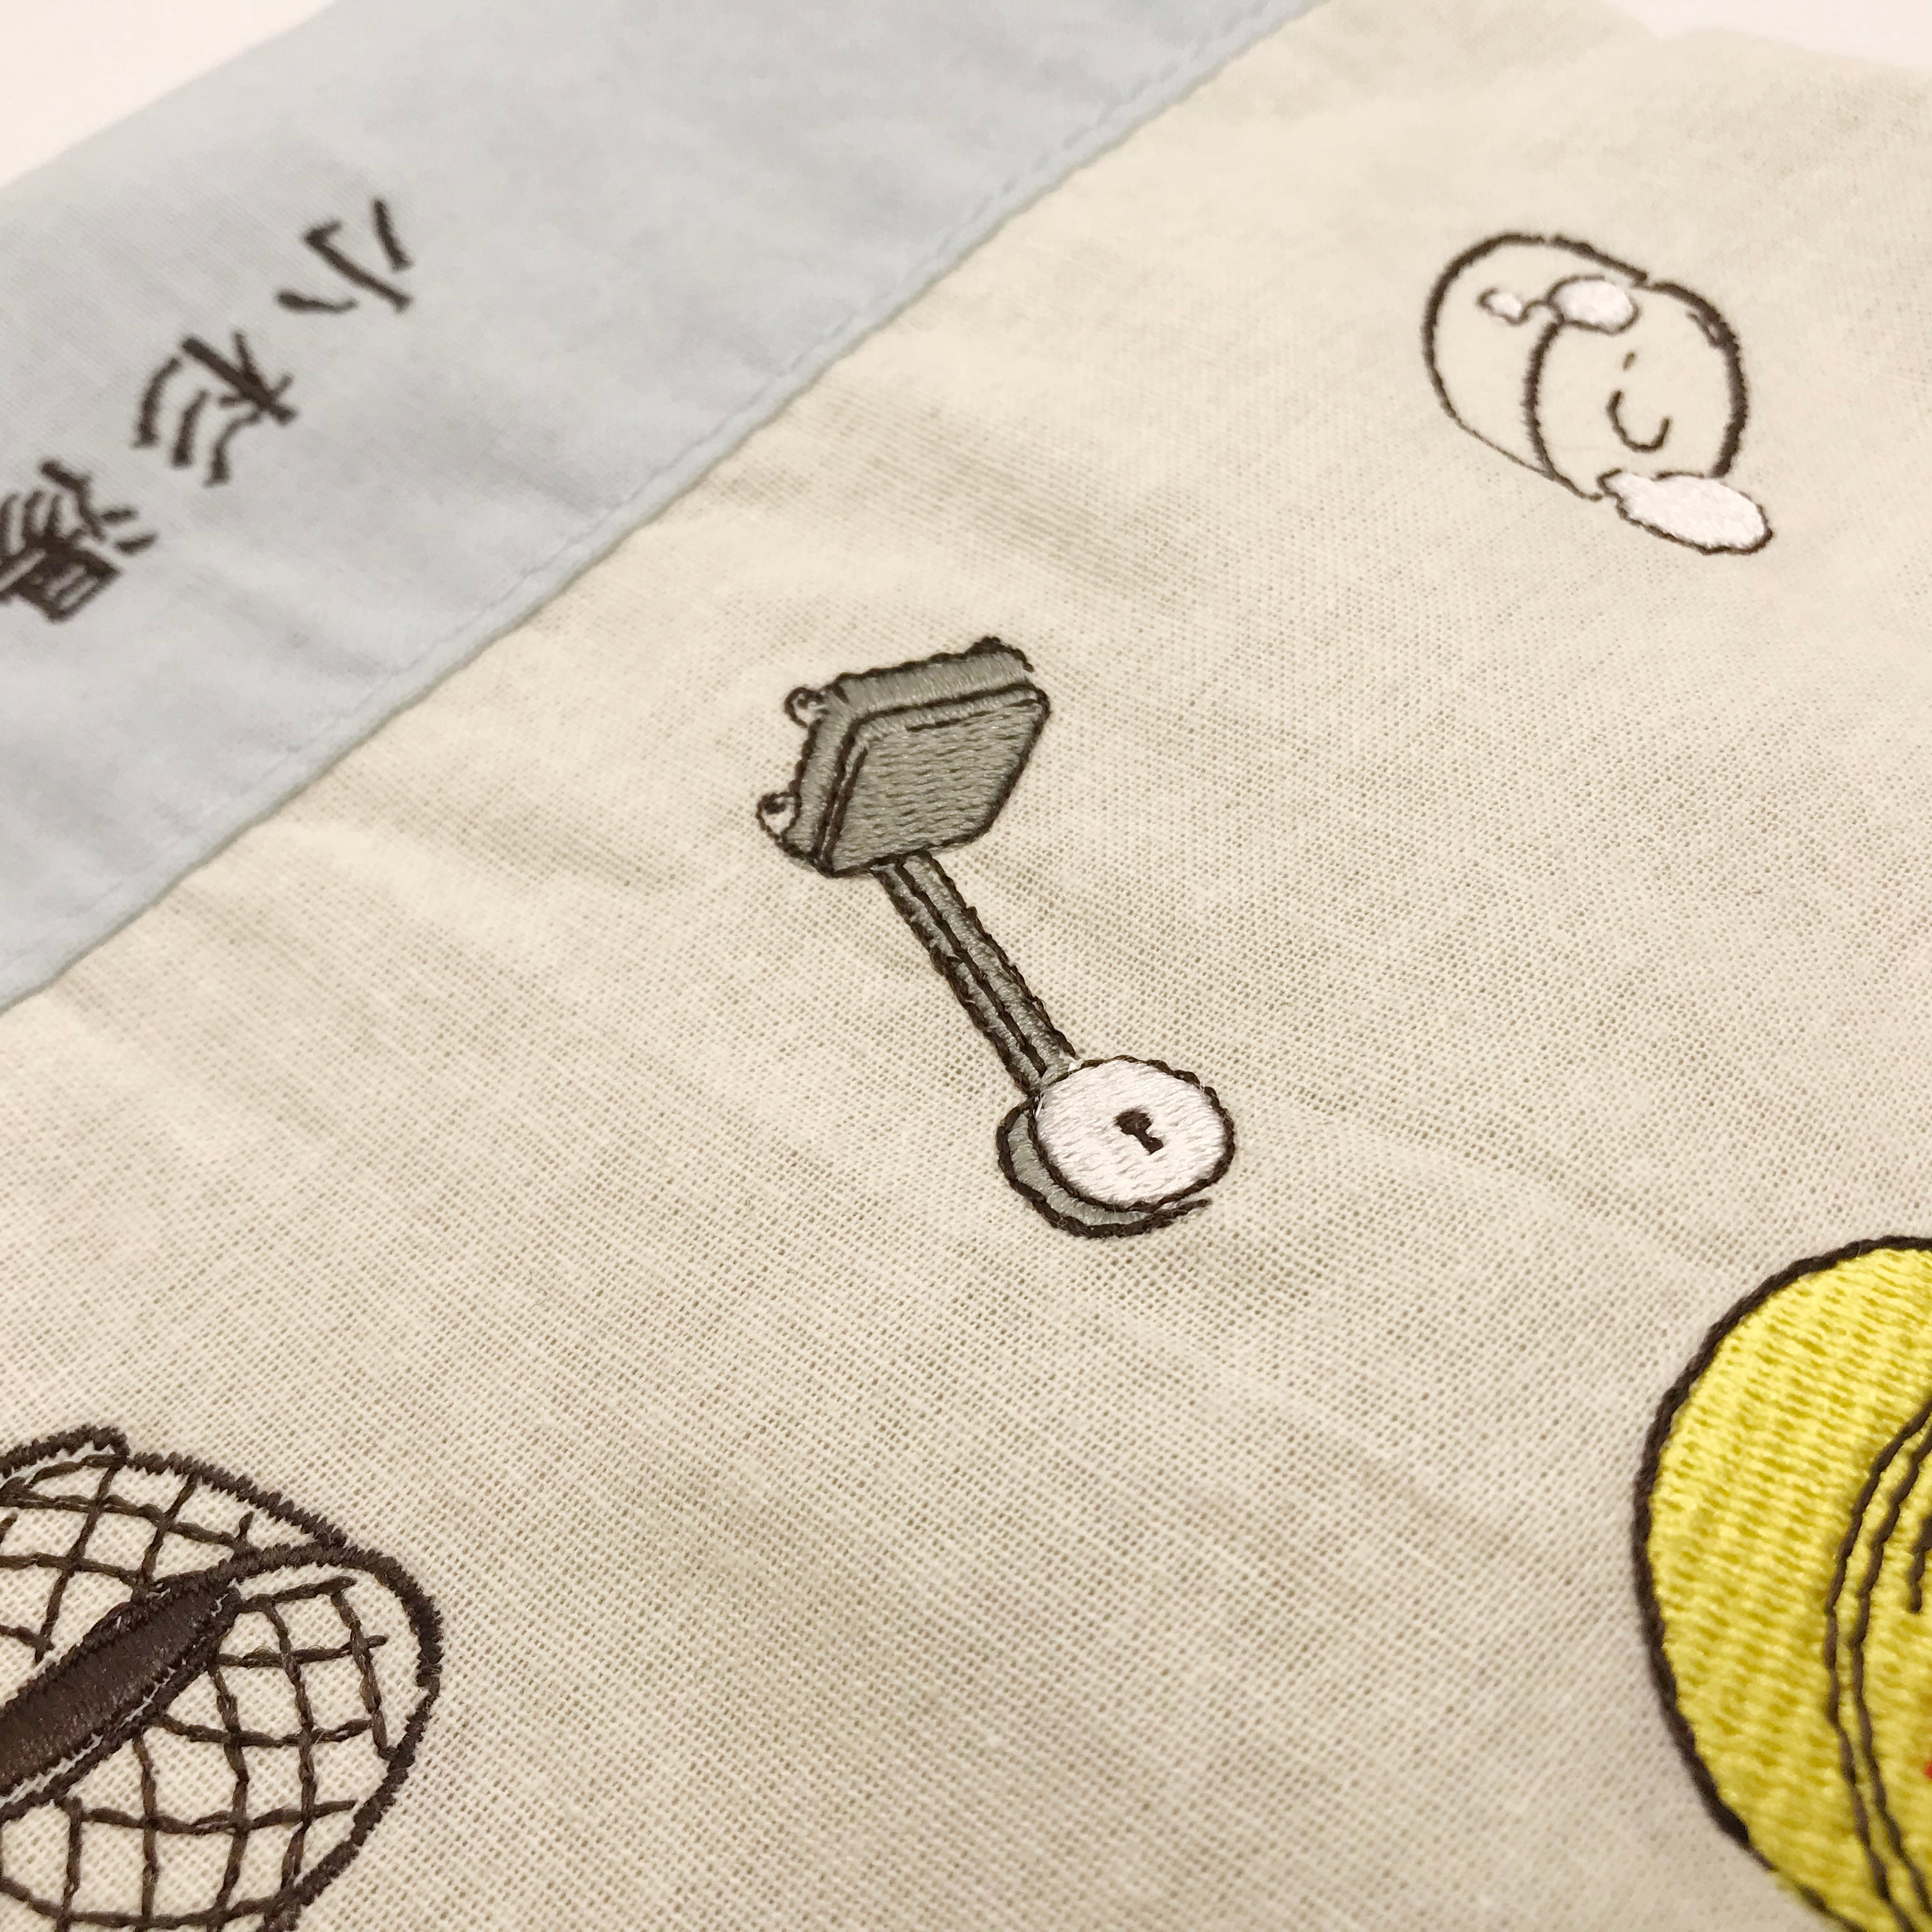 Kosugiyu embroidery purse